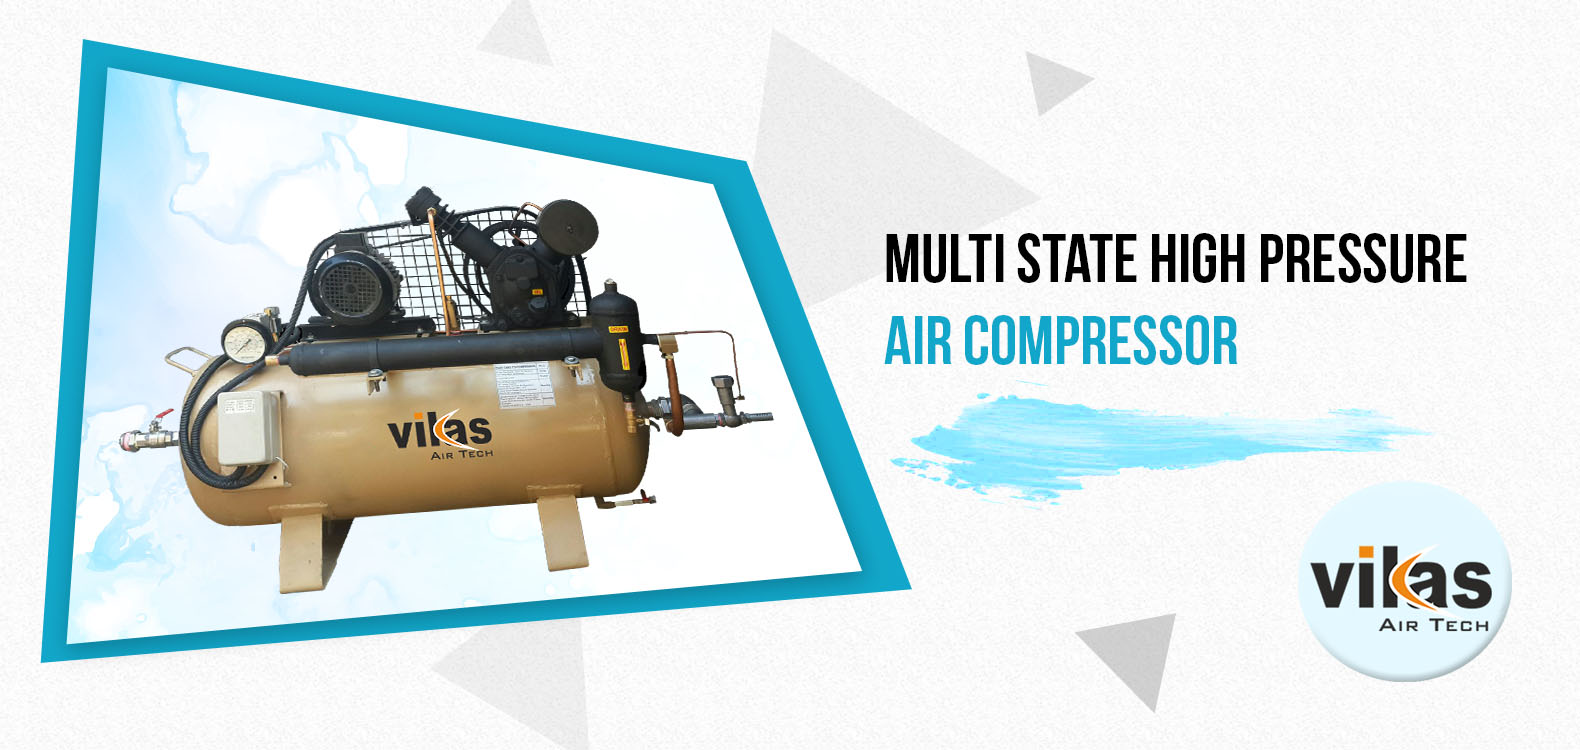 Multi state high pressure air compressor